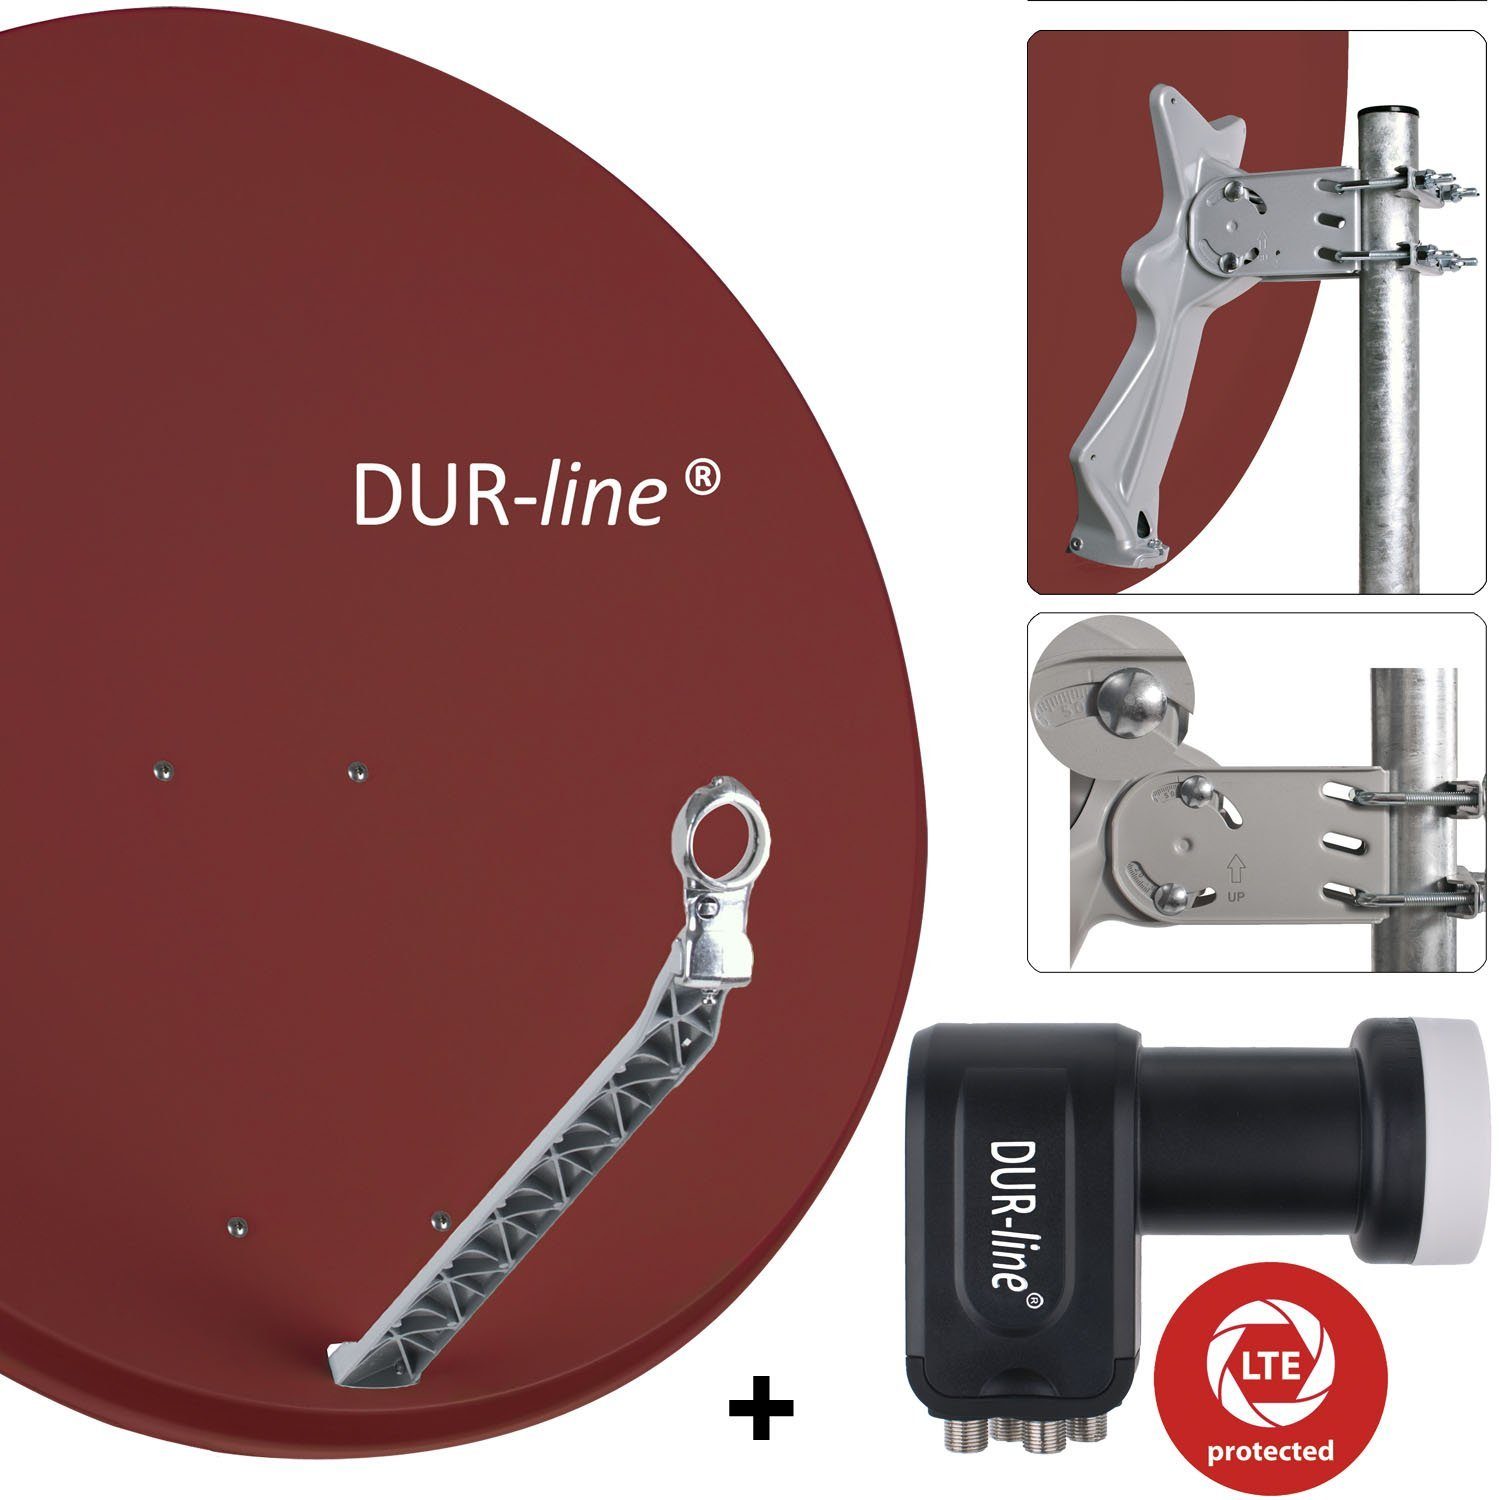 DUR-line DUR-line 4 Teilnehmer Set - Qualitäts-Alu-Satelliten-Komplettanlage - Sat-Spiegel